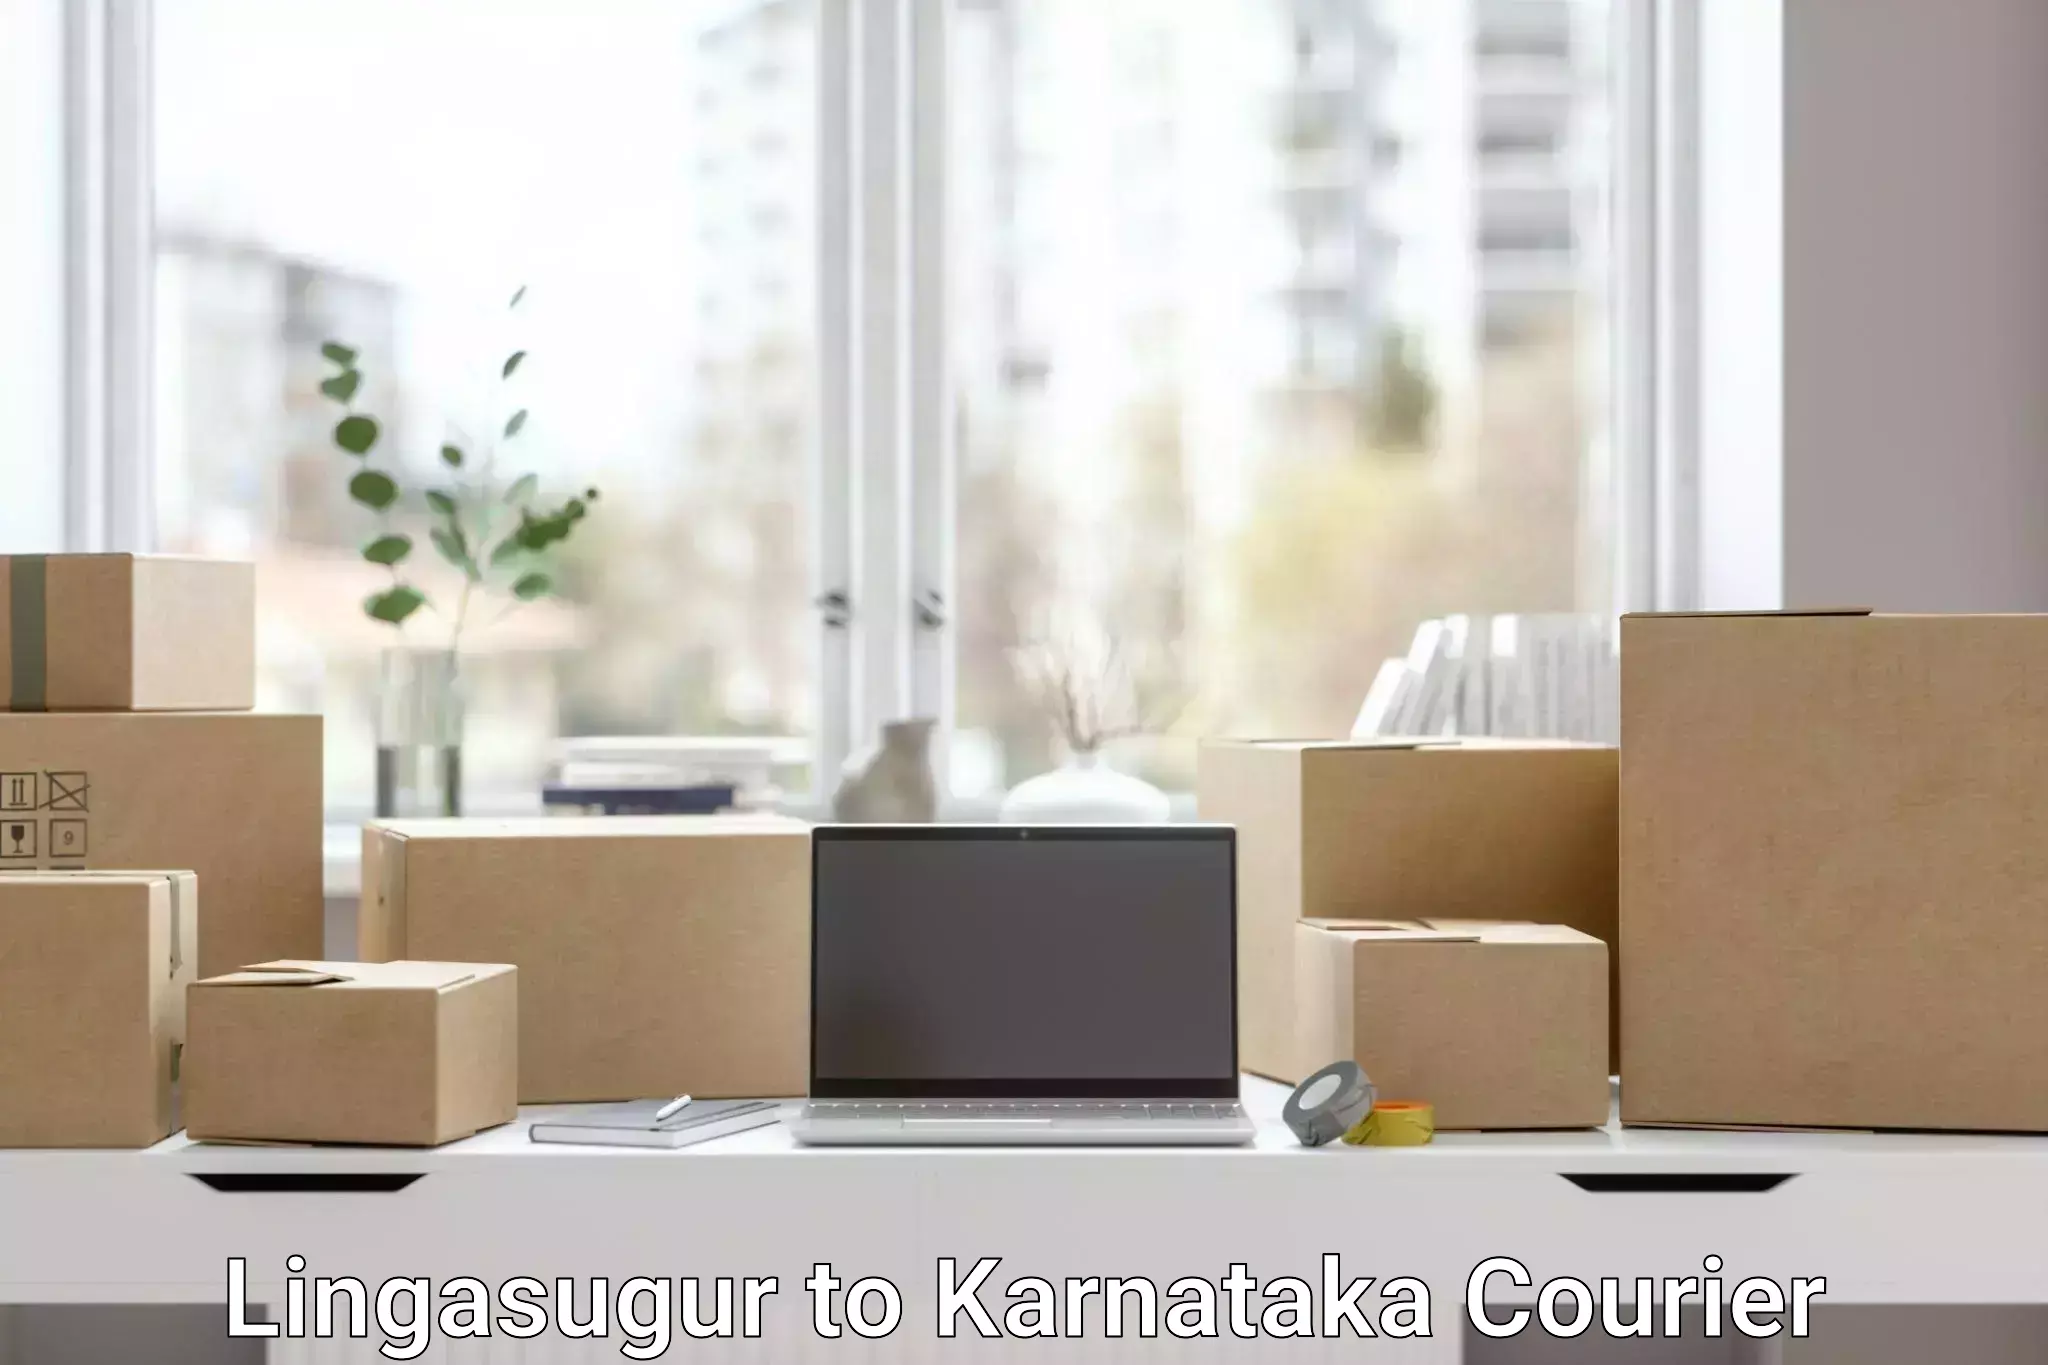 Next-day delivery options Lingasugur to Karnataka